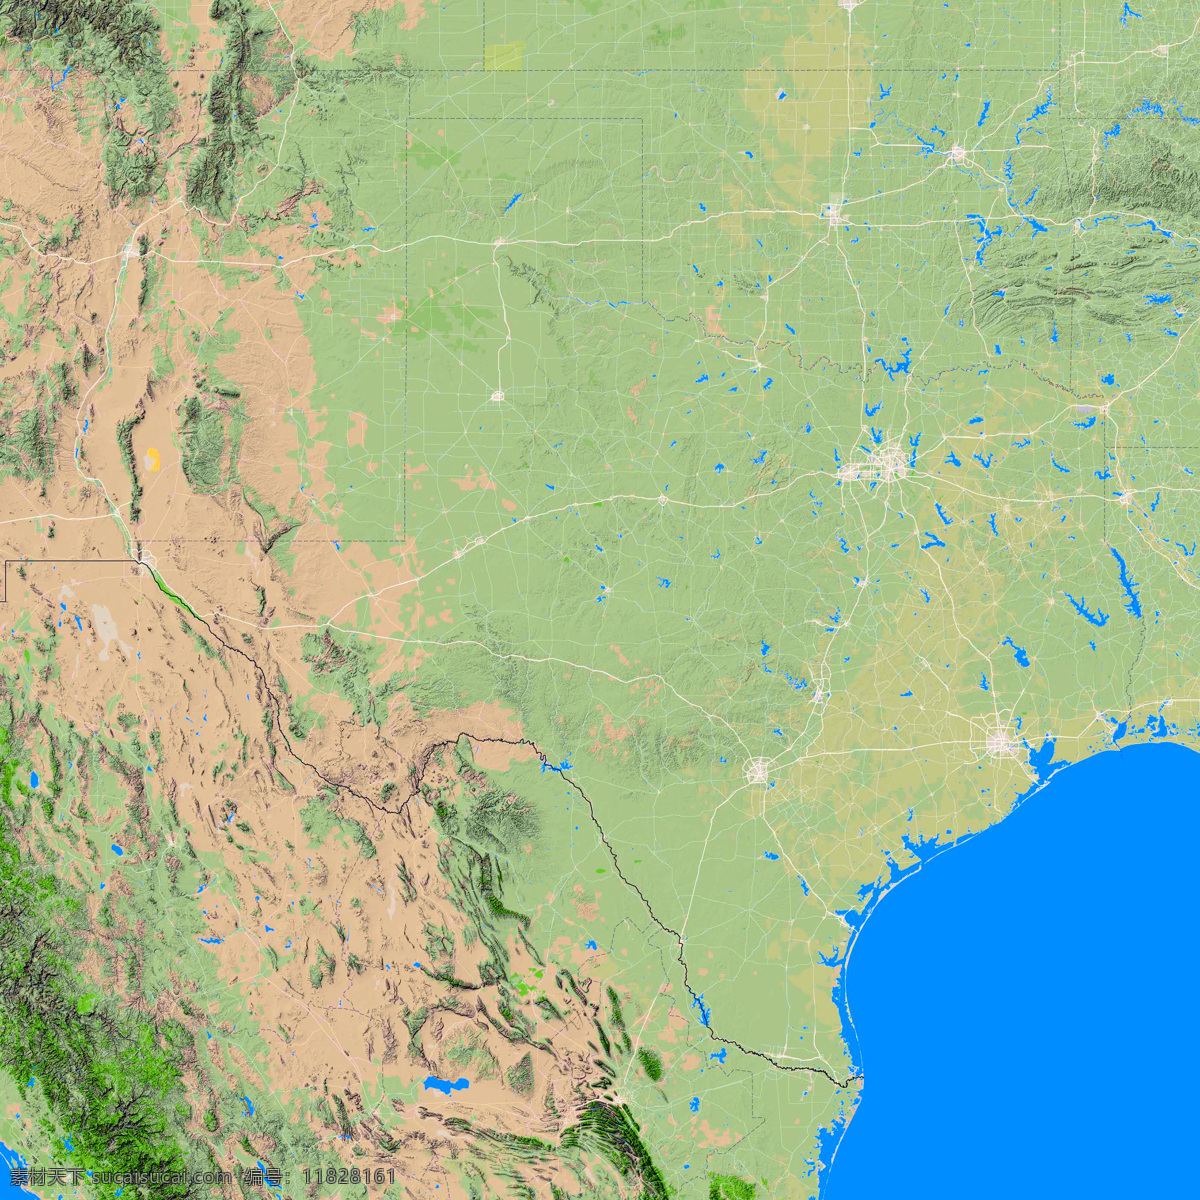 德克萨斯州 地形图 得克萨斯州 亚洲 欧洲 非洲 美洲 澳洲 南极洲 上帝之眼 卫星图 俯视图 nasa 地中海 海洋 山地 西西里岛 撒丁岛 阿尔卑斯山 南欧 东欧 地球 自然景观 自然风景